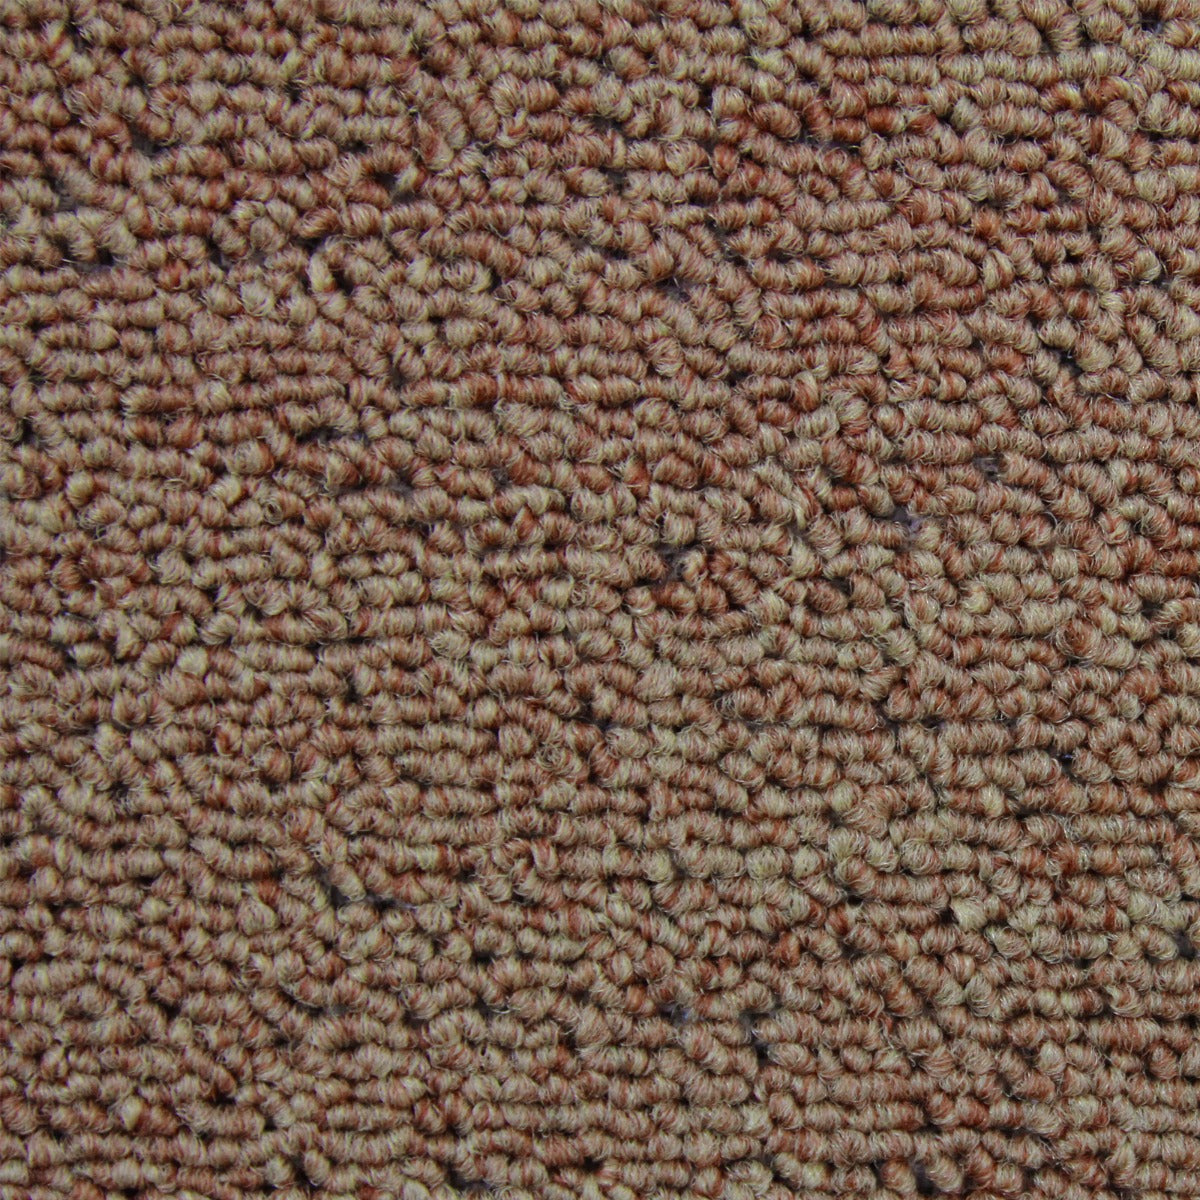 20 x Carpet Tiles 5m2 / Beige